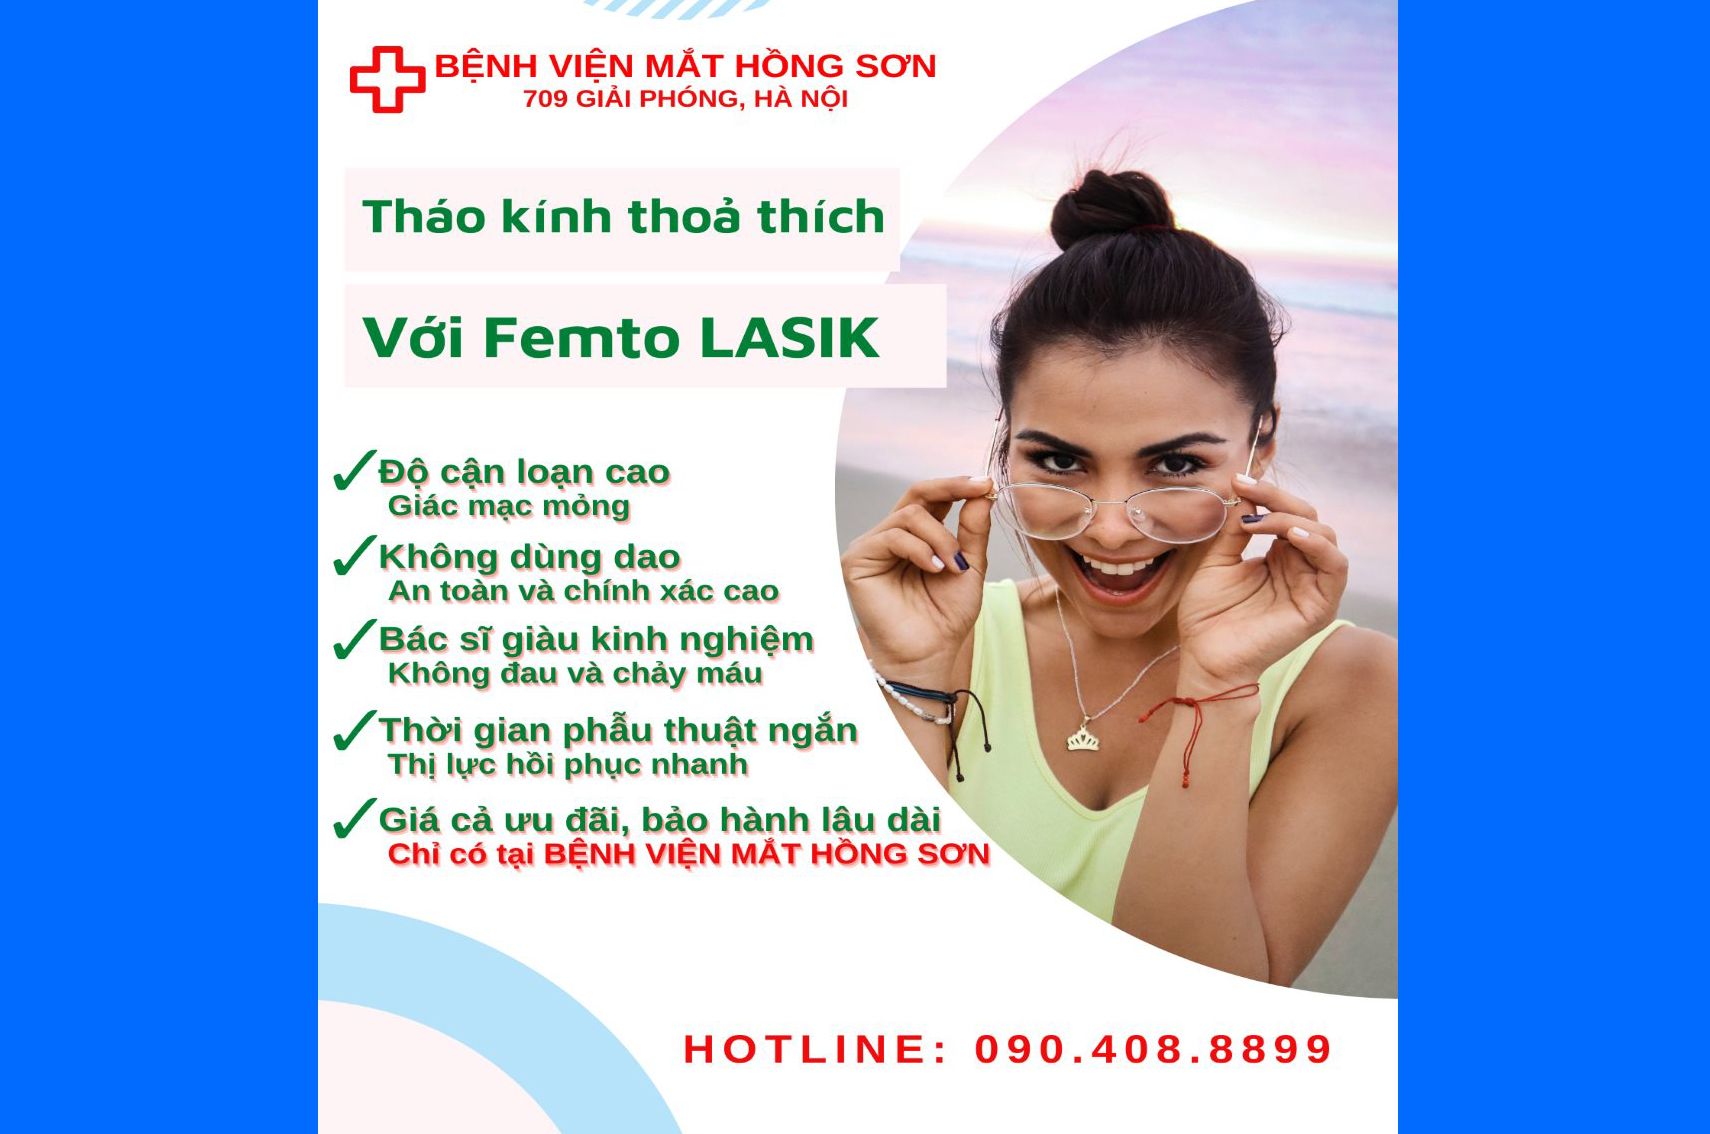 Femto Lasik - Giải pháp phẫu thuật cận thị tiên tiến tại Bệnh viện Mắt Hồng Sơn